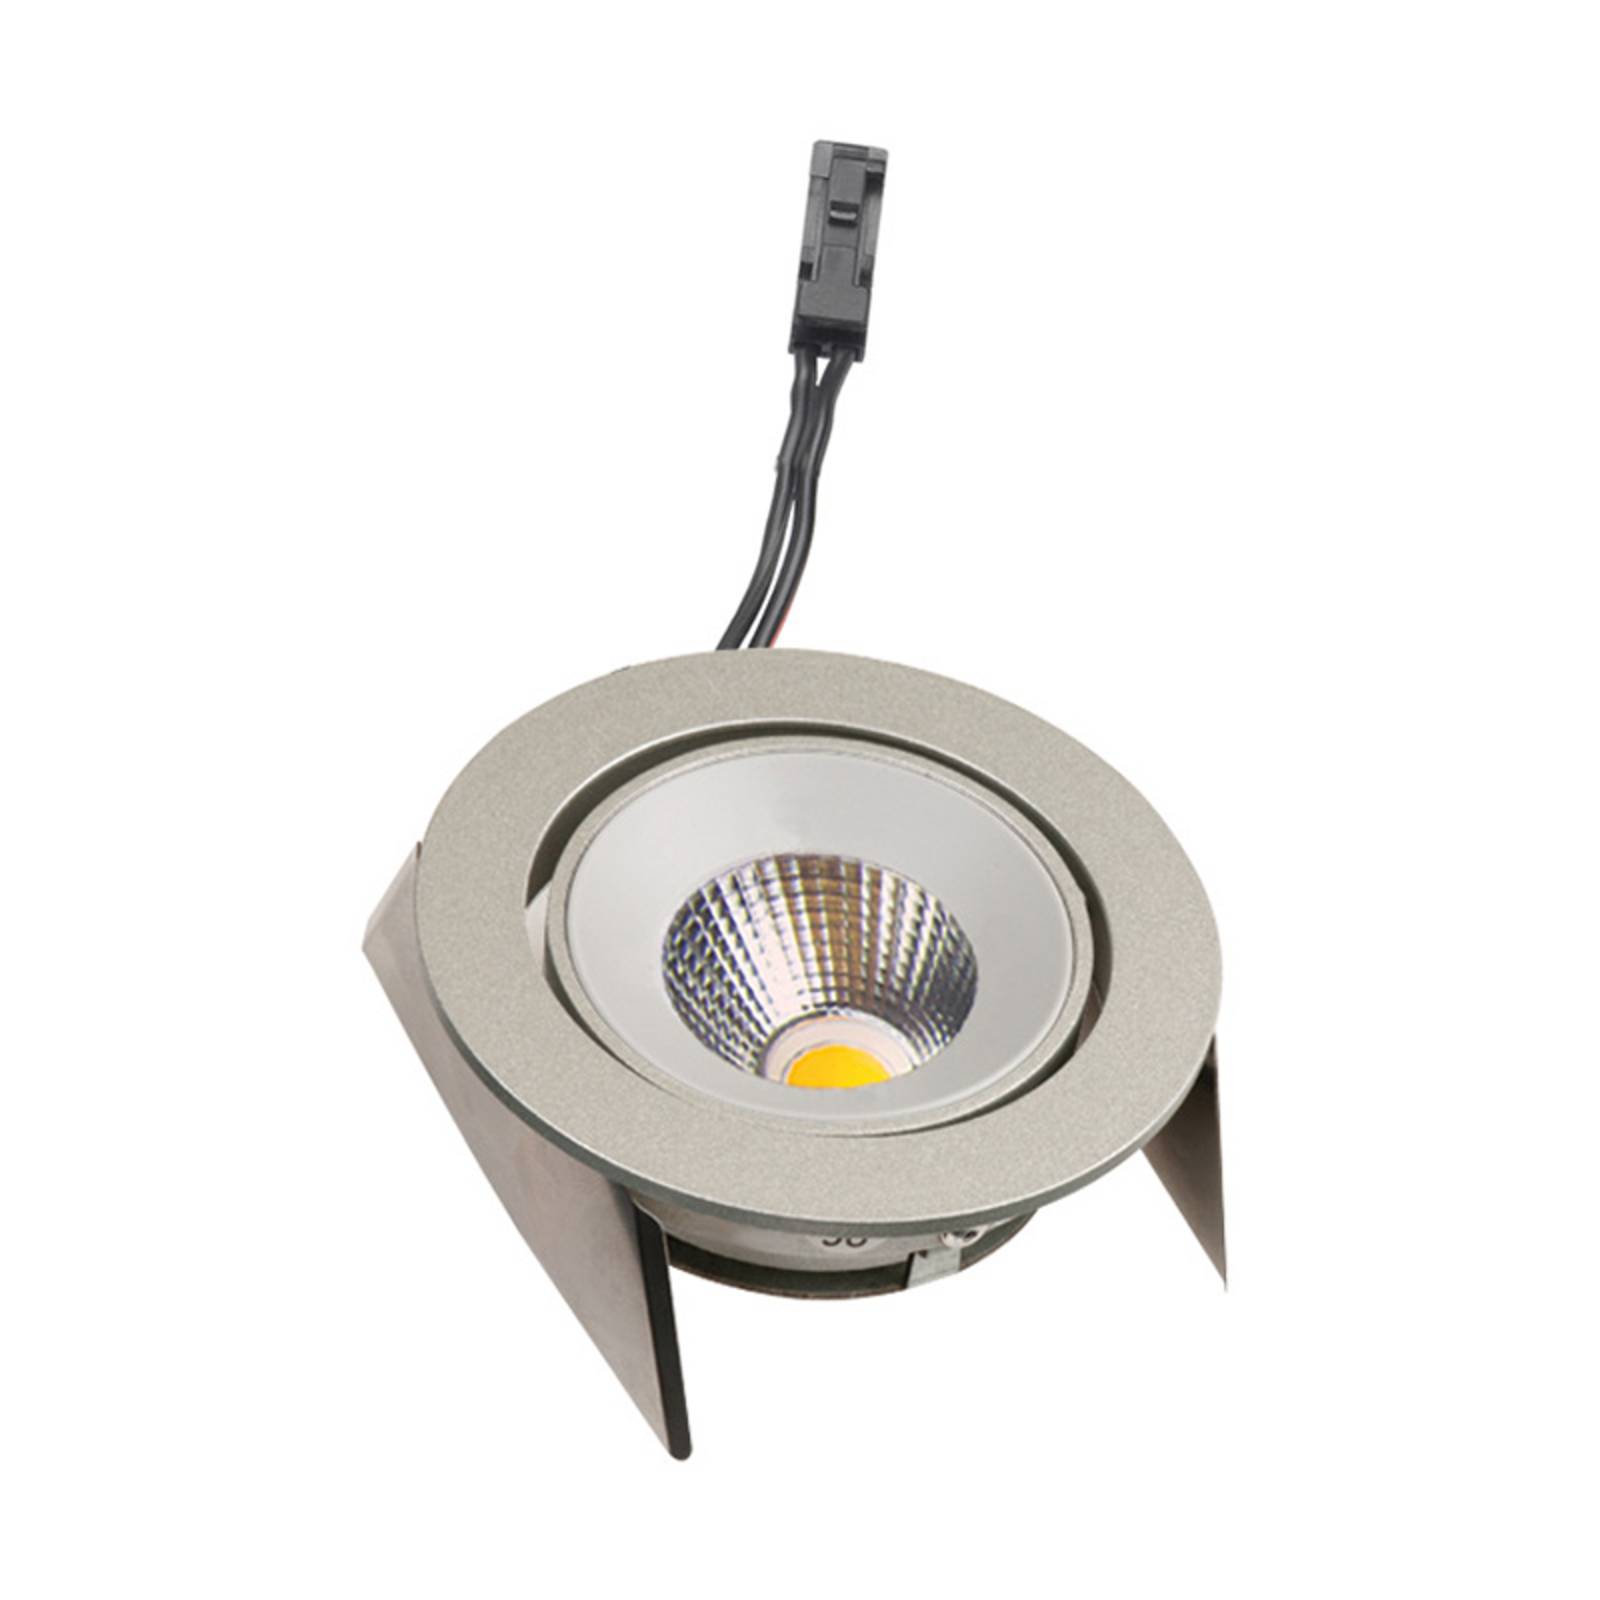 Lampe encastrée LED SR 68 43° Dim-to-Warm, inox